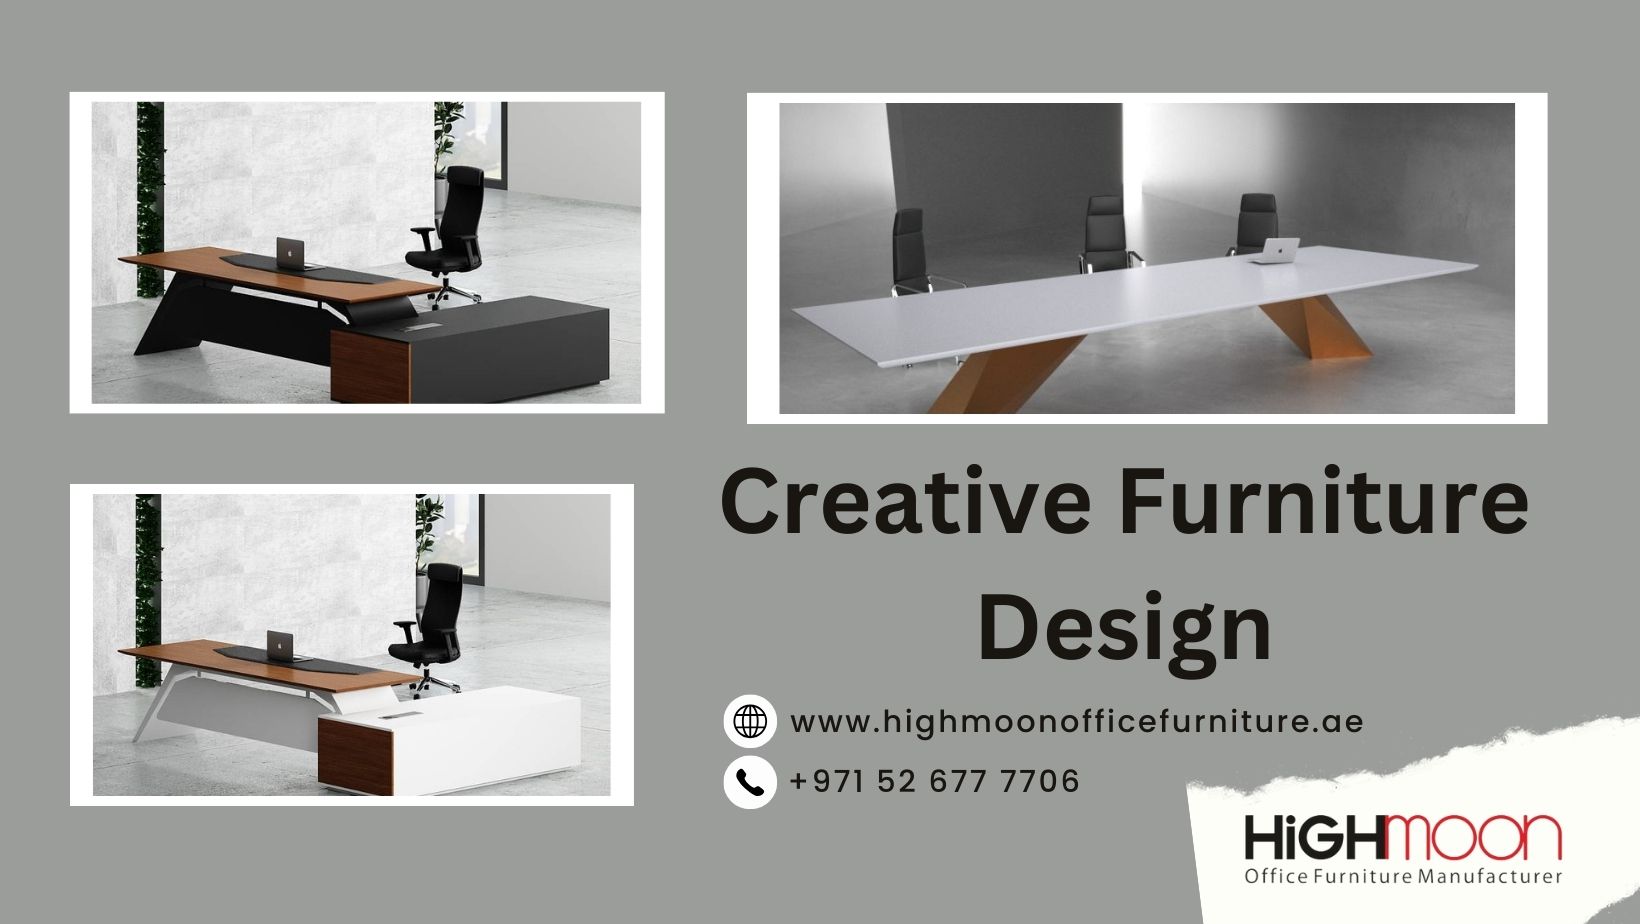 Creative Furniture Design.